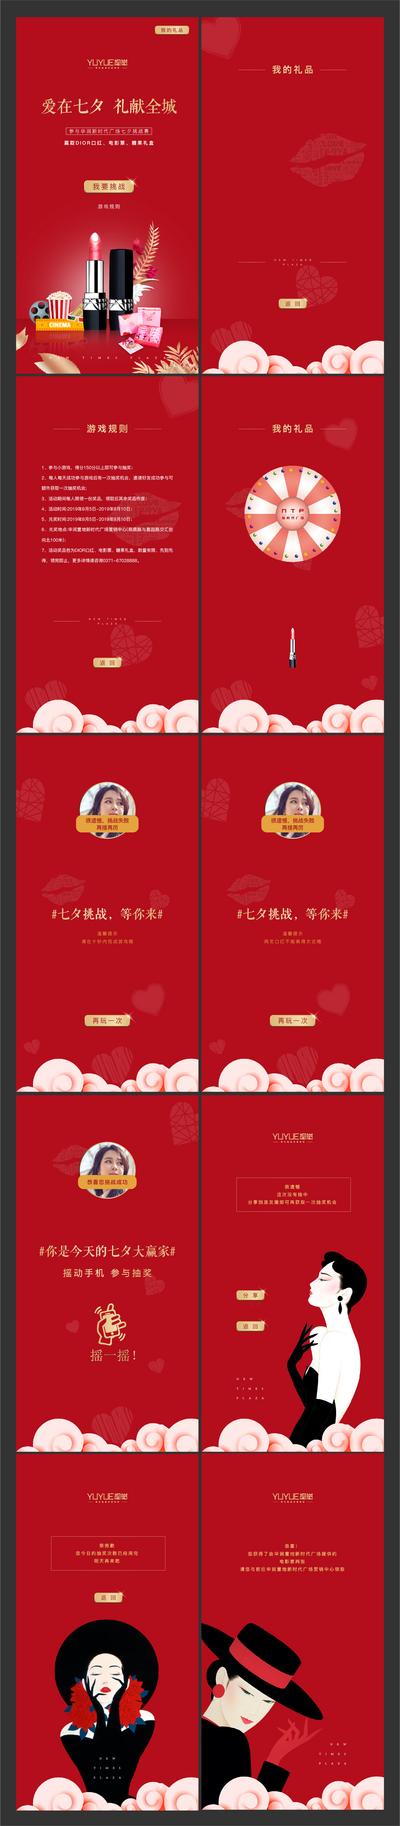 南门网 活动 H5 专题设计 房地产 中国传统节日 七夕 口红 抽奖